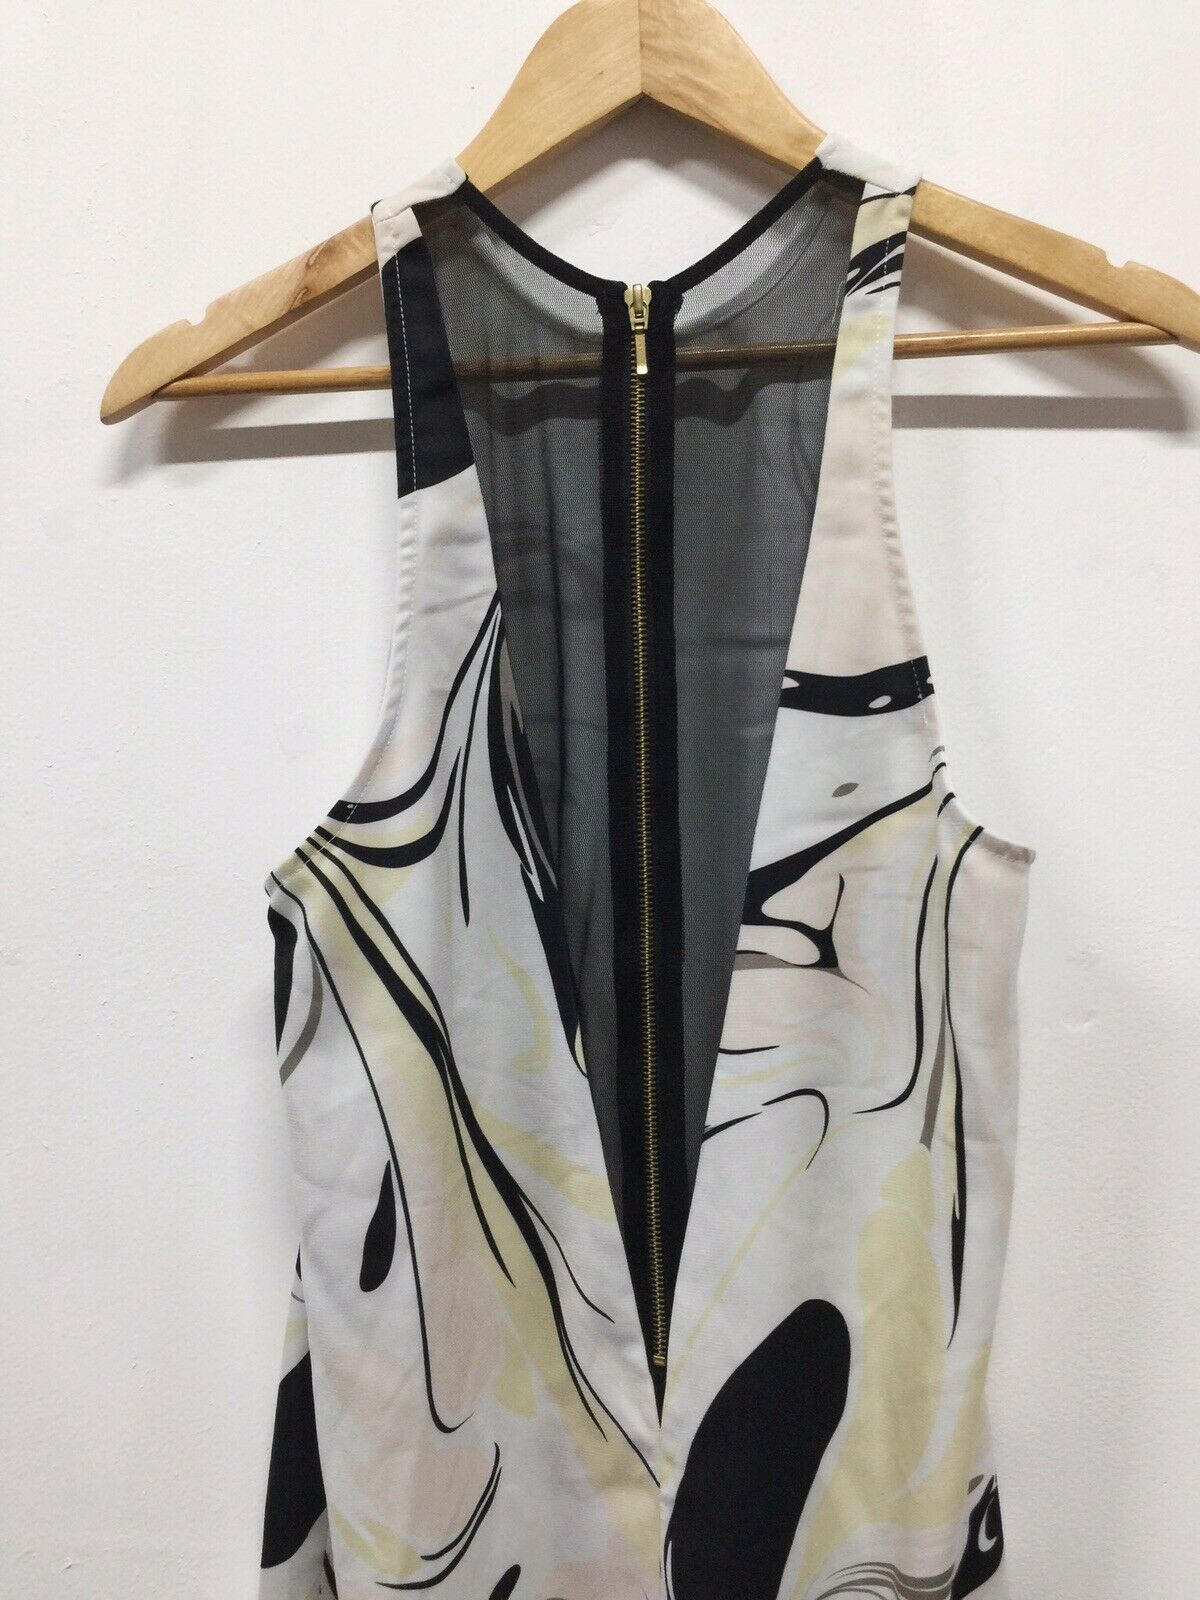 Shona Joy Swirl Zip Swing Dress - Size 12